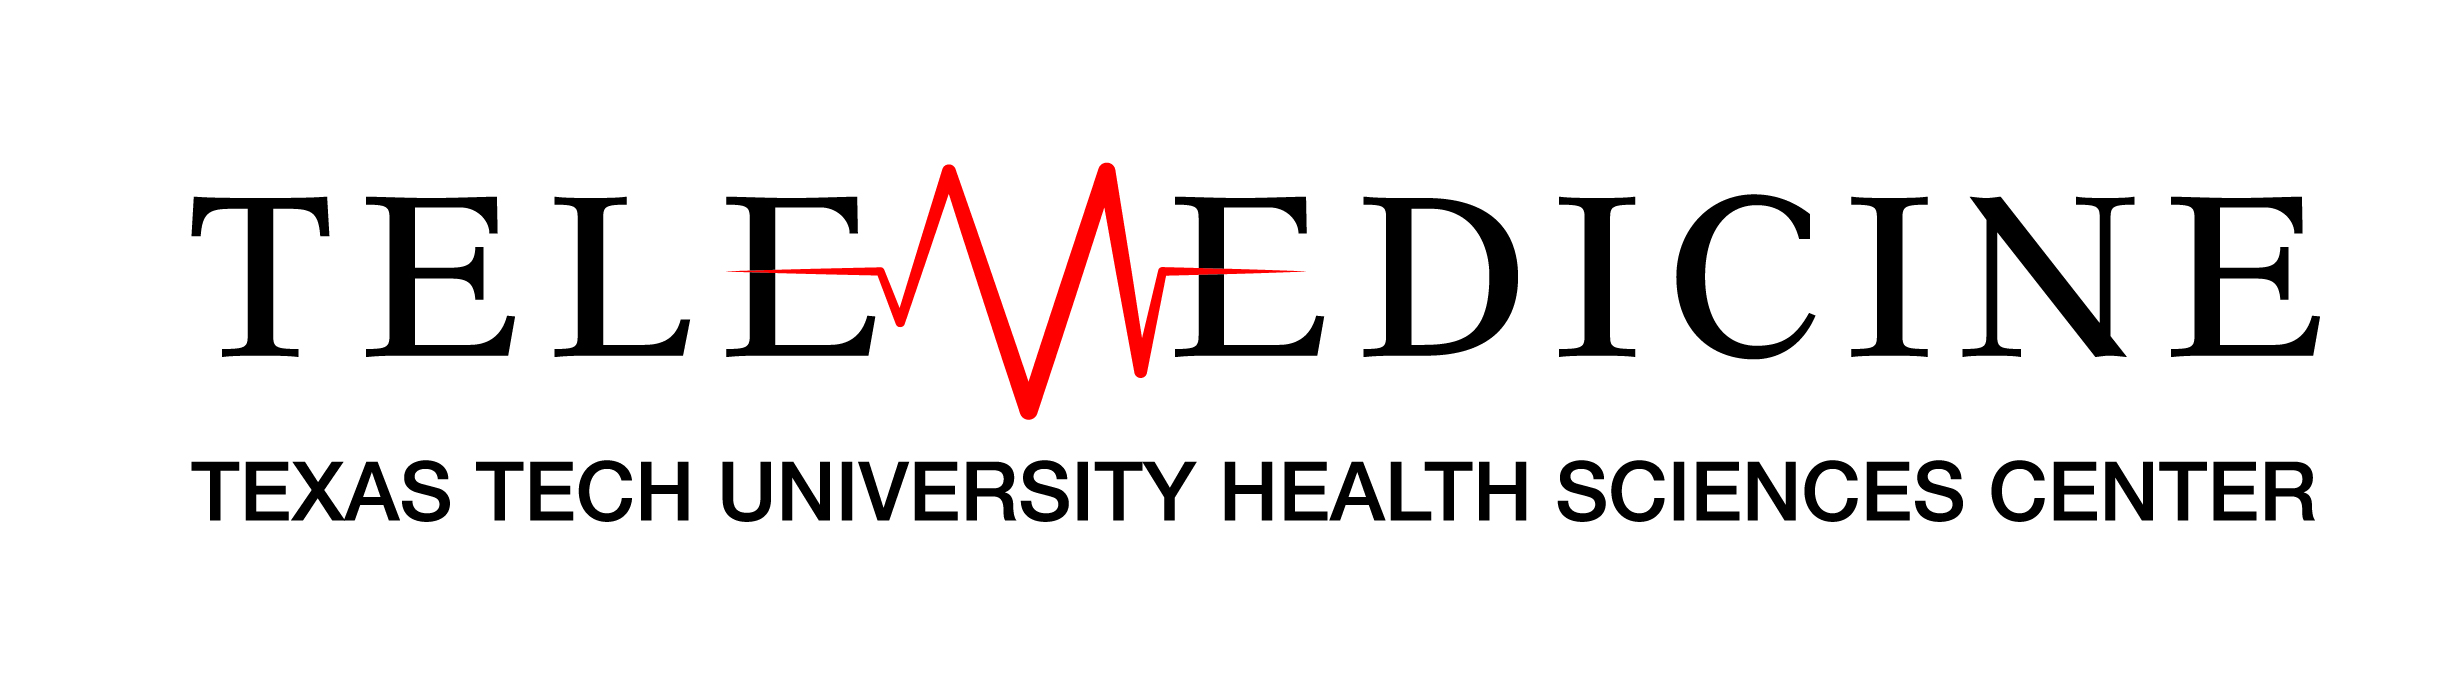 Telemedicine logo